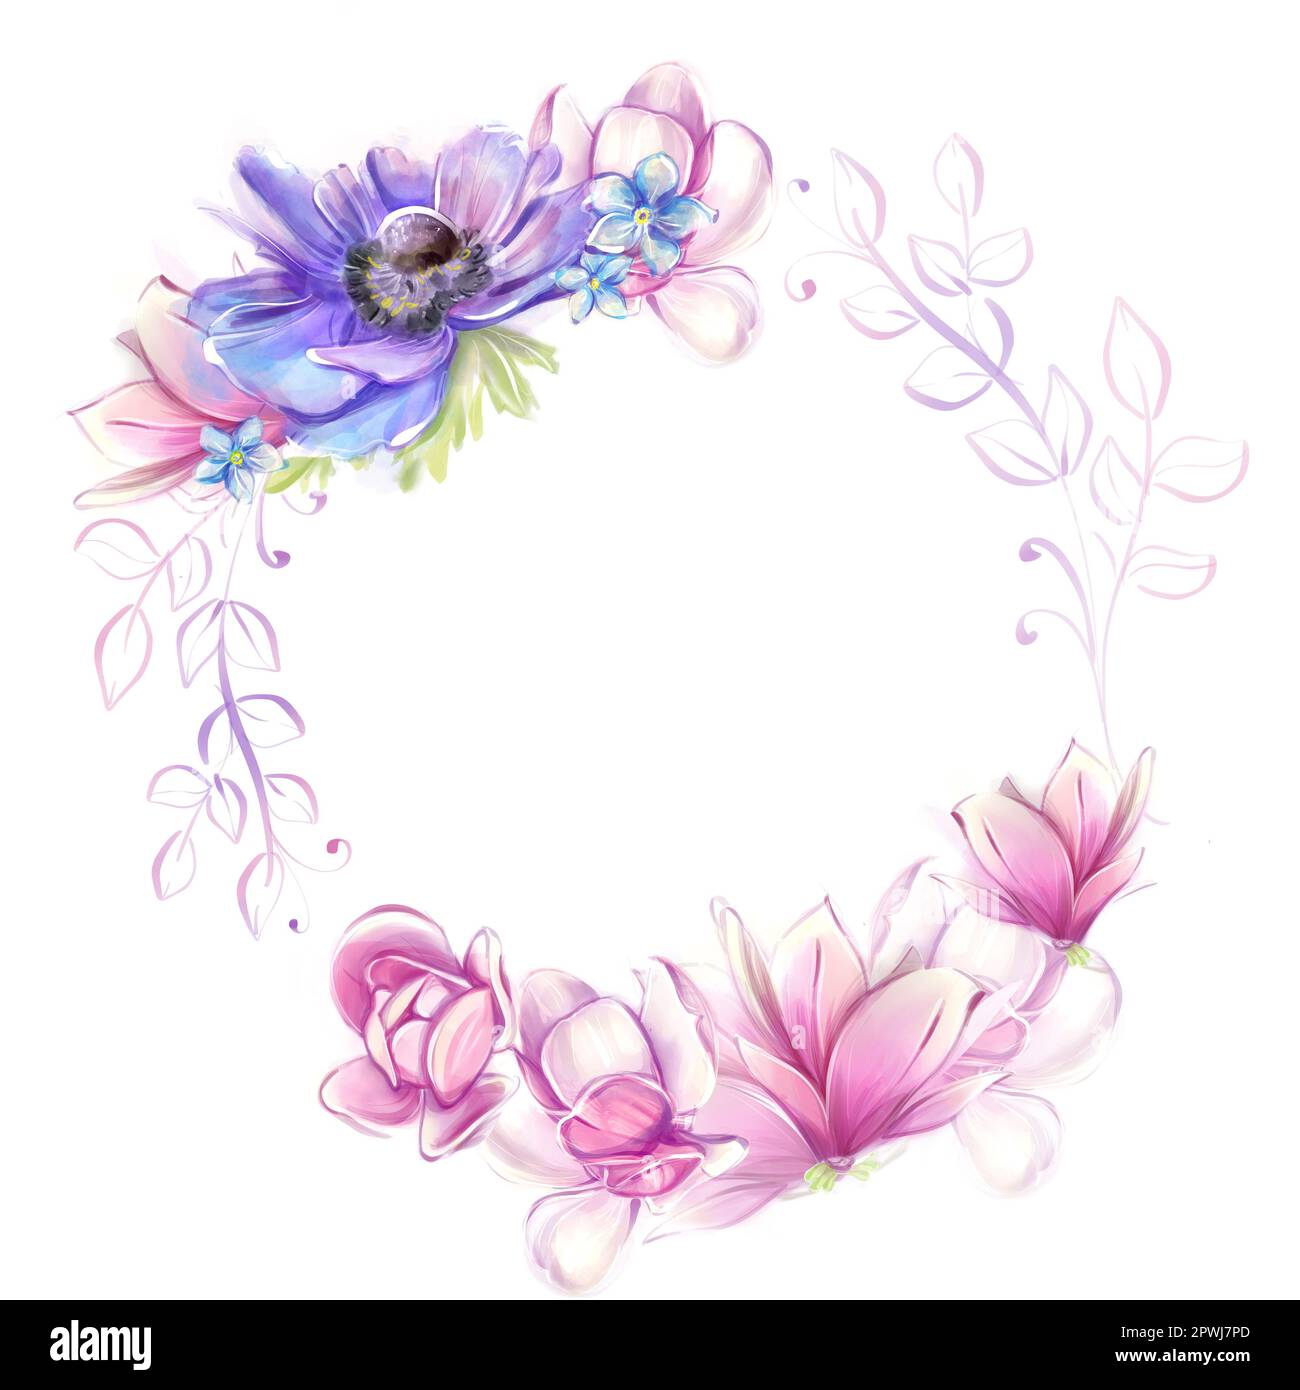 Cadre rond fleuri avec anémones, magnolias. Romance française, clipart. Fleurs roses et bleues dans un style aquarelle. Banque D'Images